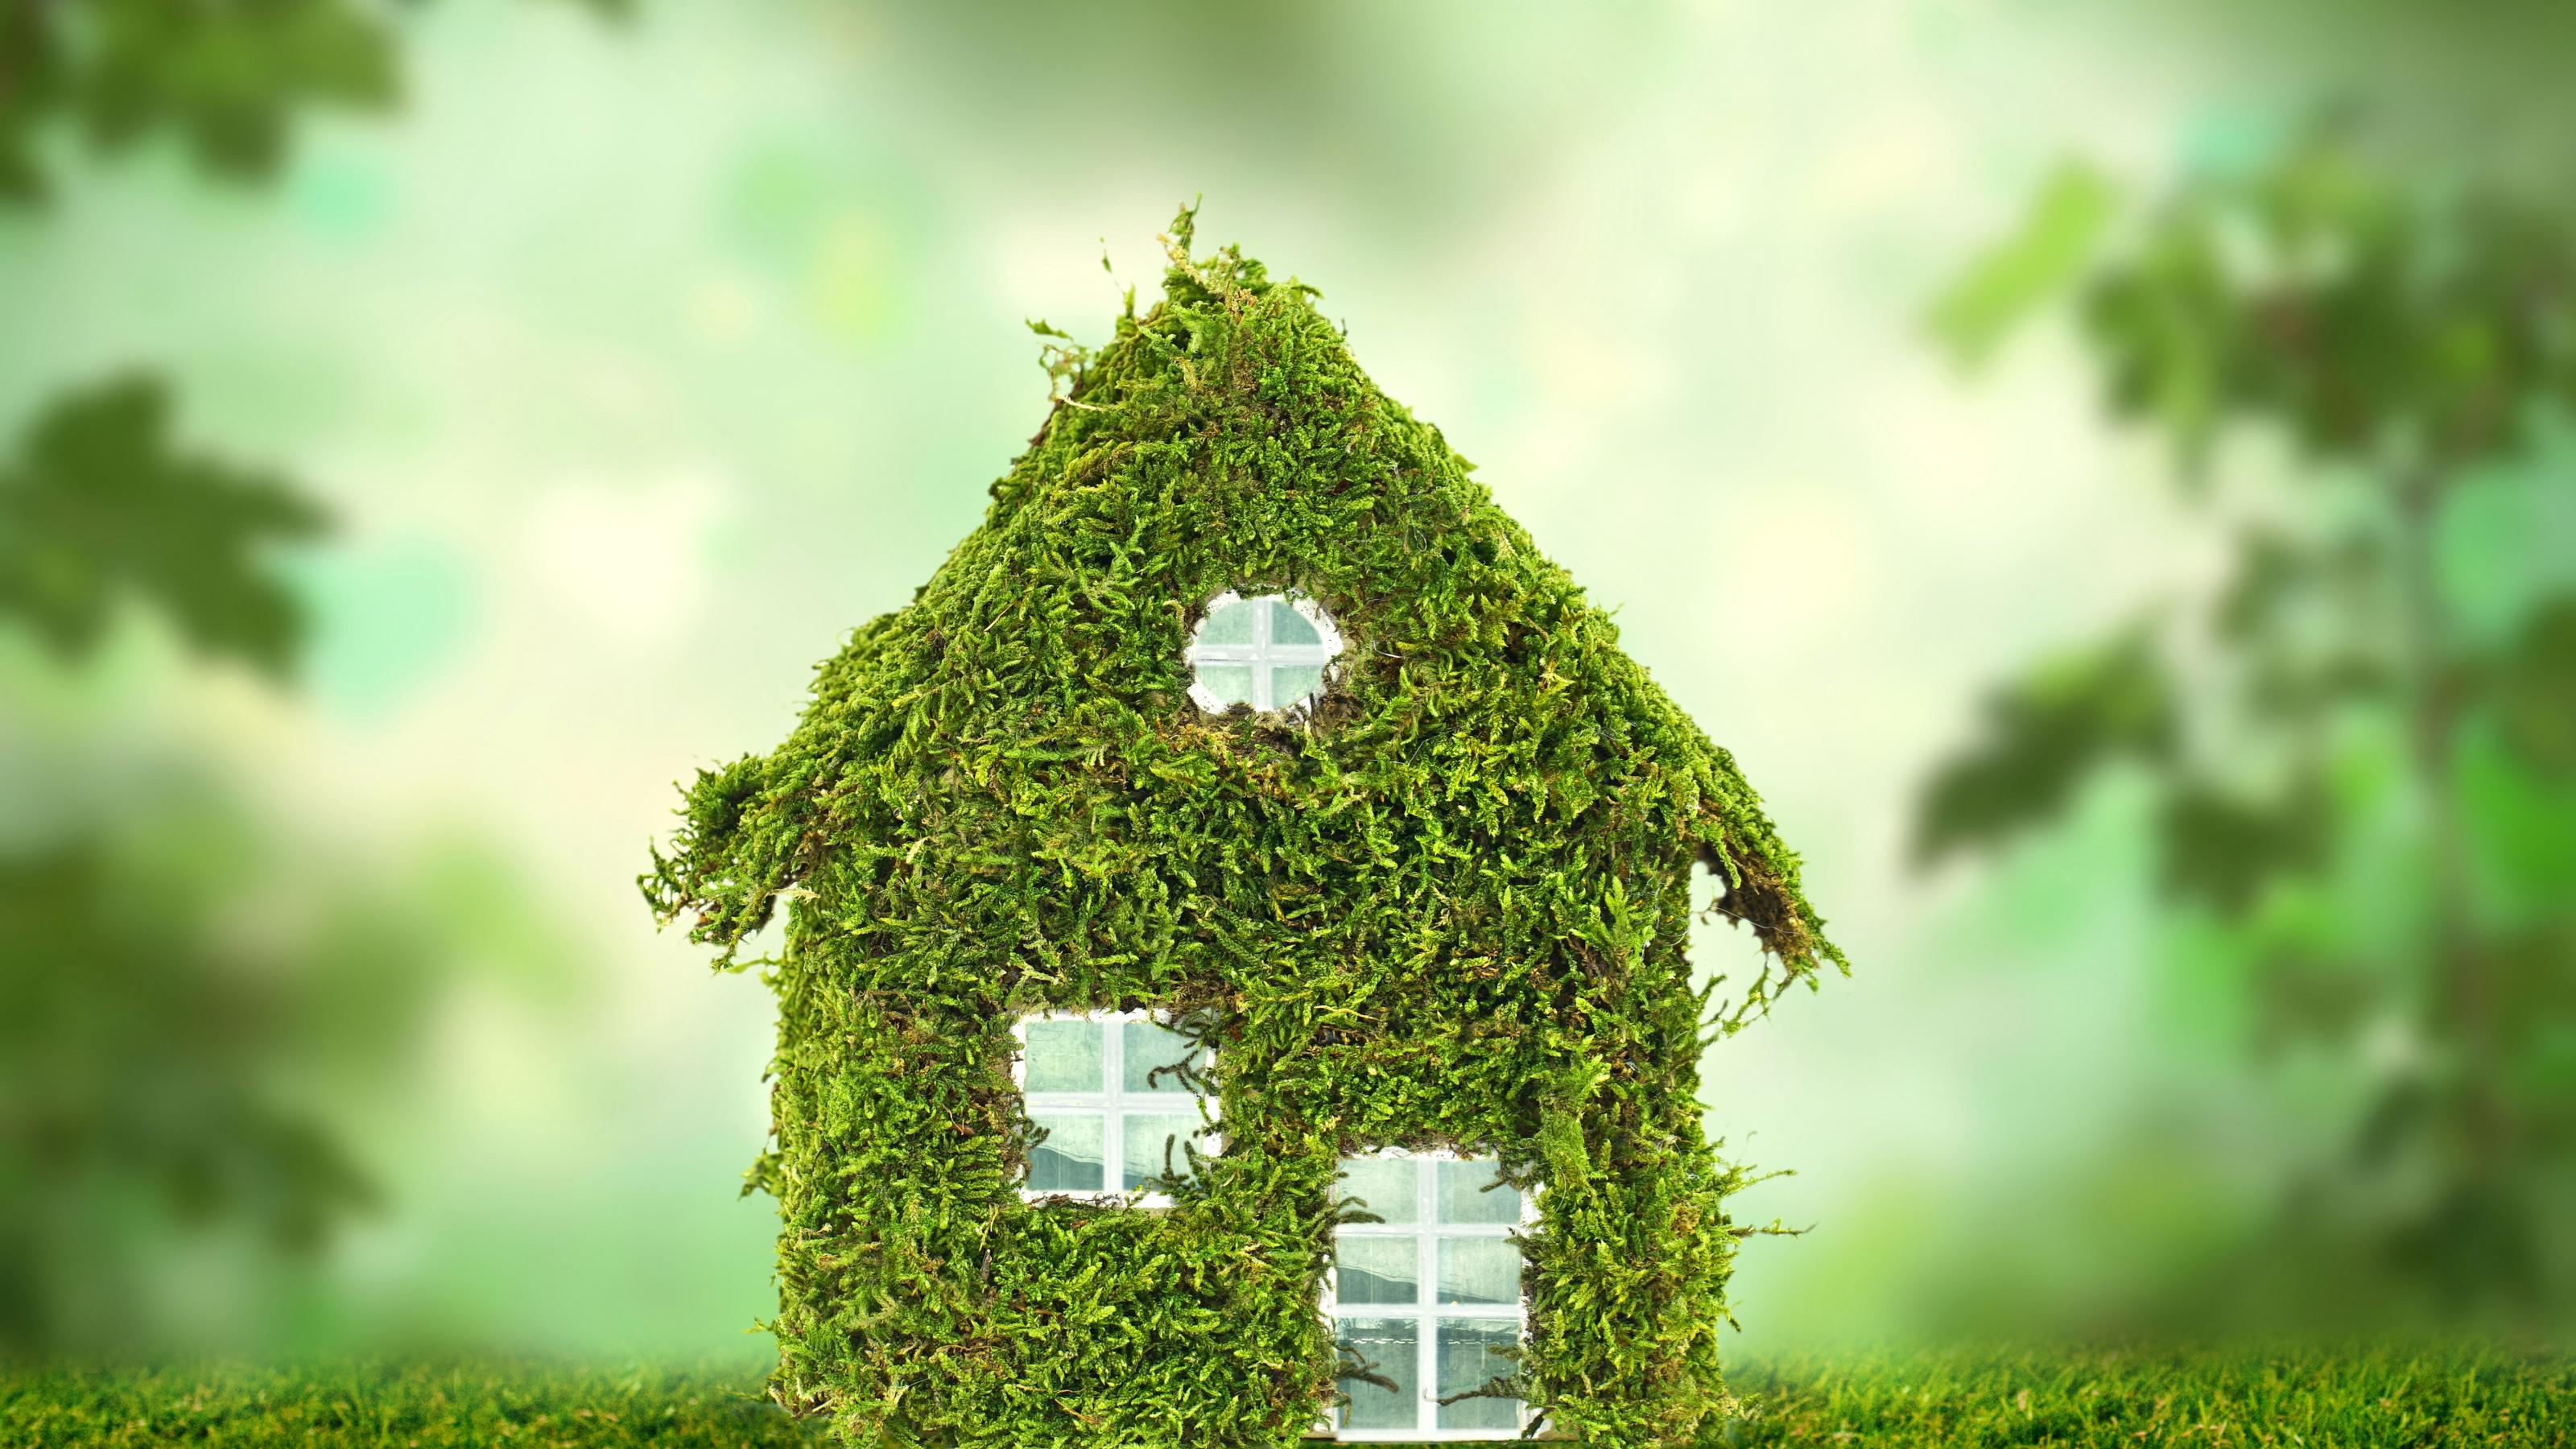 Schematische Darstellung eines archetypischen kleinen Einfamilienhauses, die Fassade ist vollständig mit Grünpflanzen bedeckt